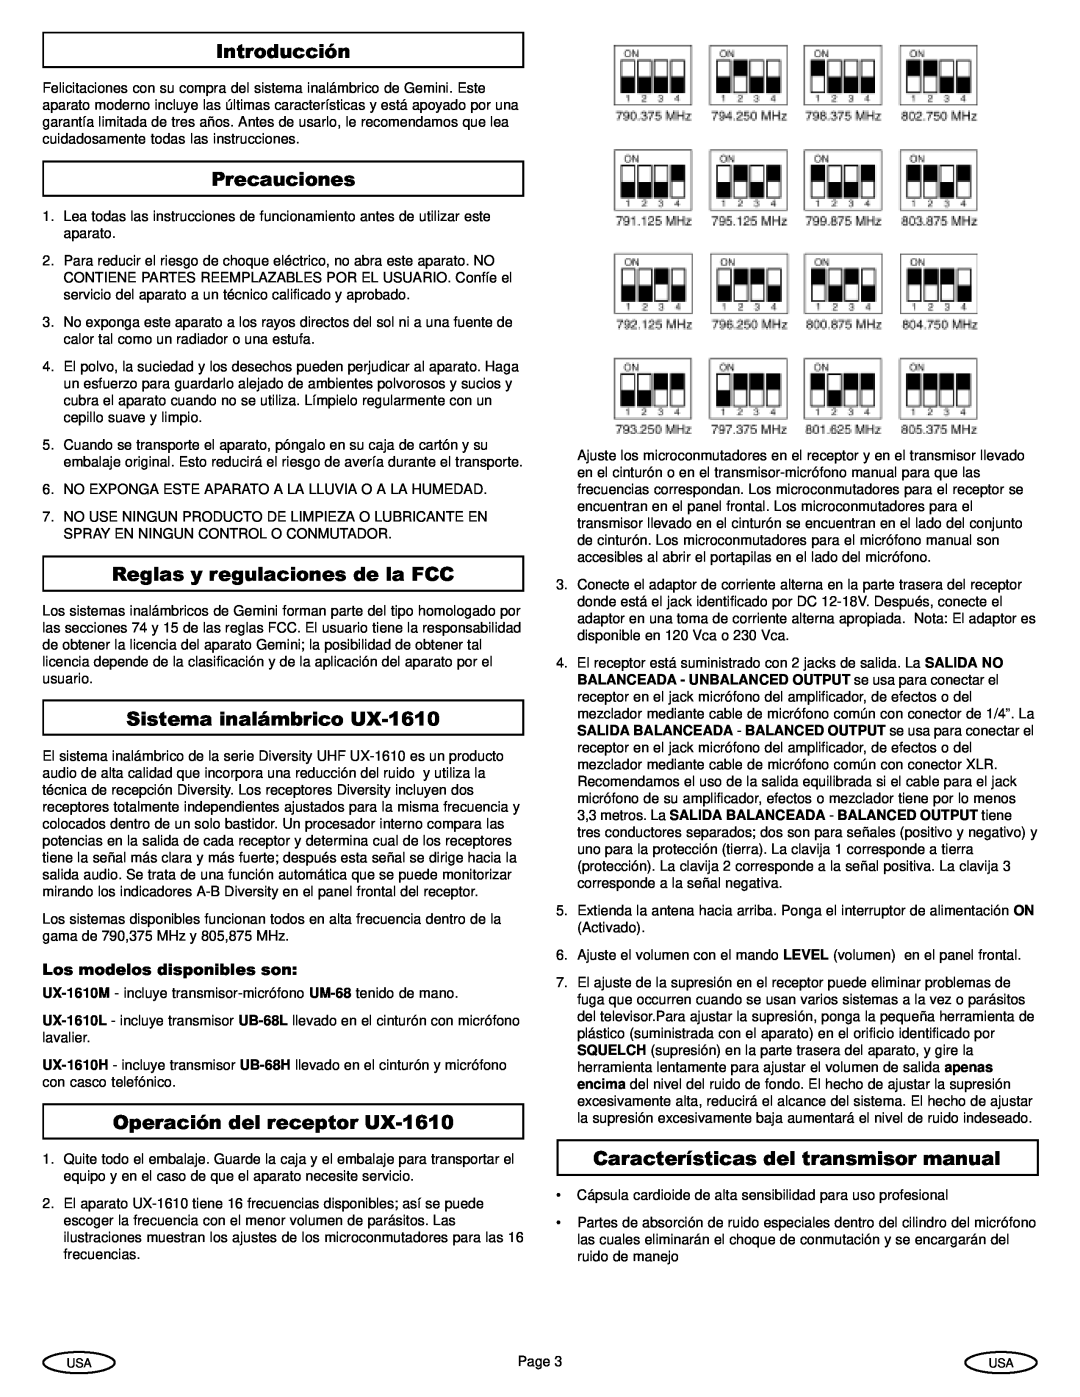 Gemini manual Introducción, Precauciones, Reglas y regulaciones de la FCC, Sistema inalámbrico UX-1610 